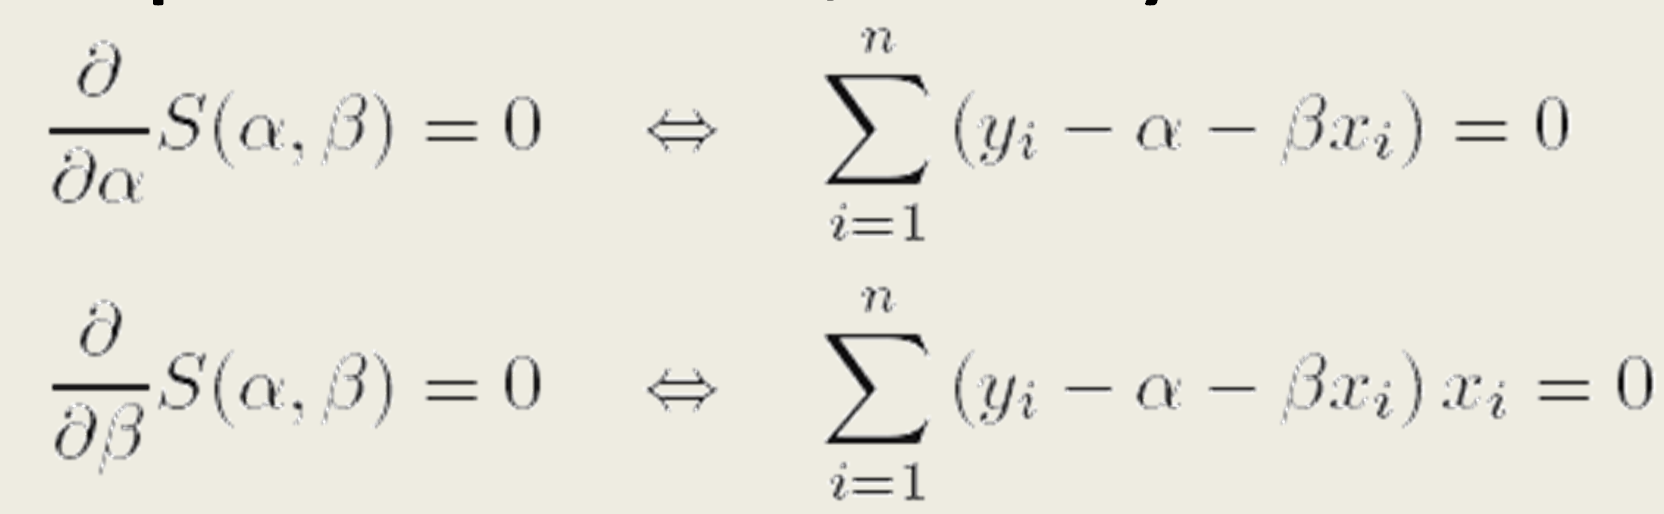 Musíme tedy provést parciální derivace funkce S podle